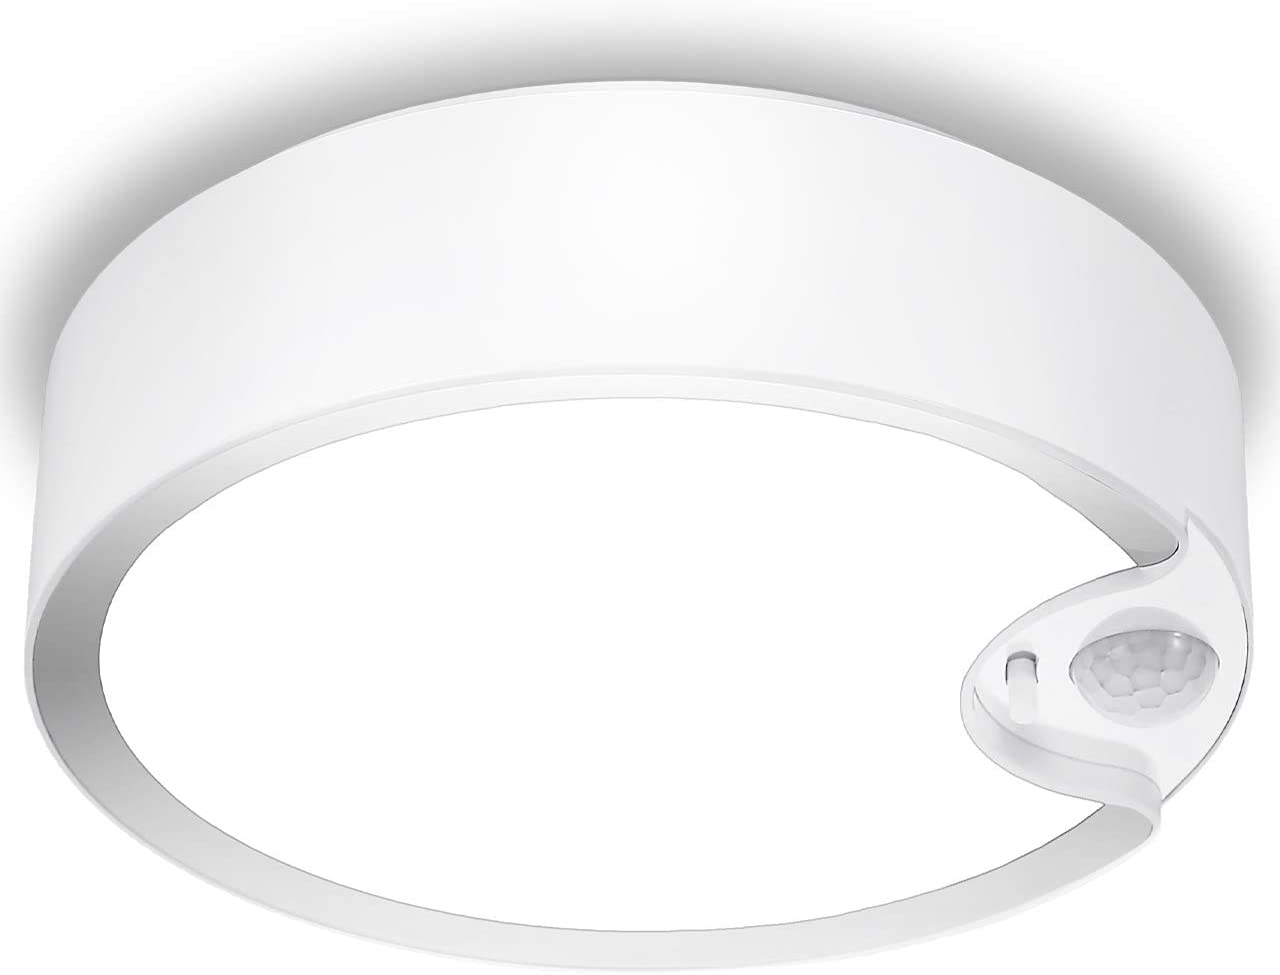 LED Ceiling Light Motion Sensor Waterproof Bathroom Round Lamp Washroom  Toilet